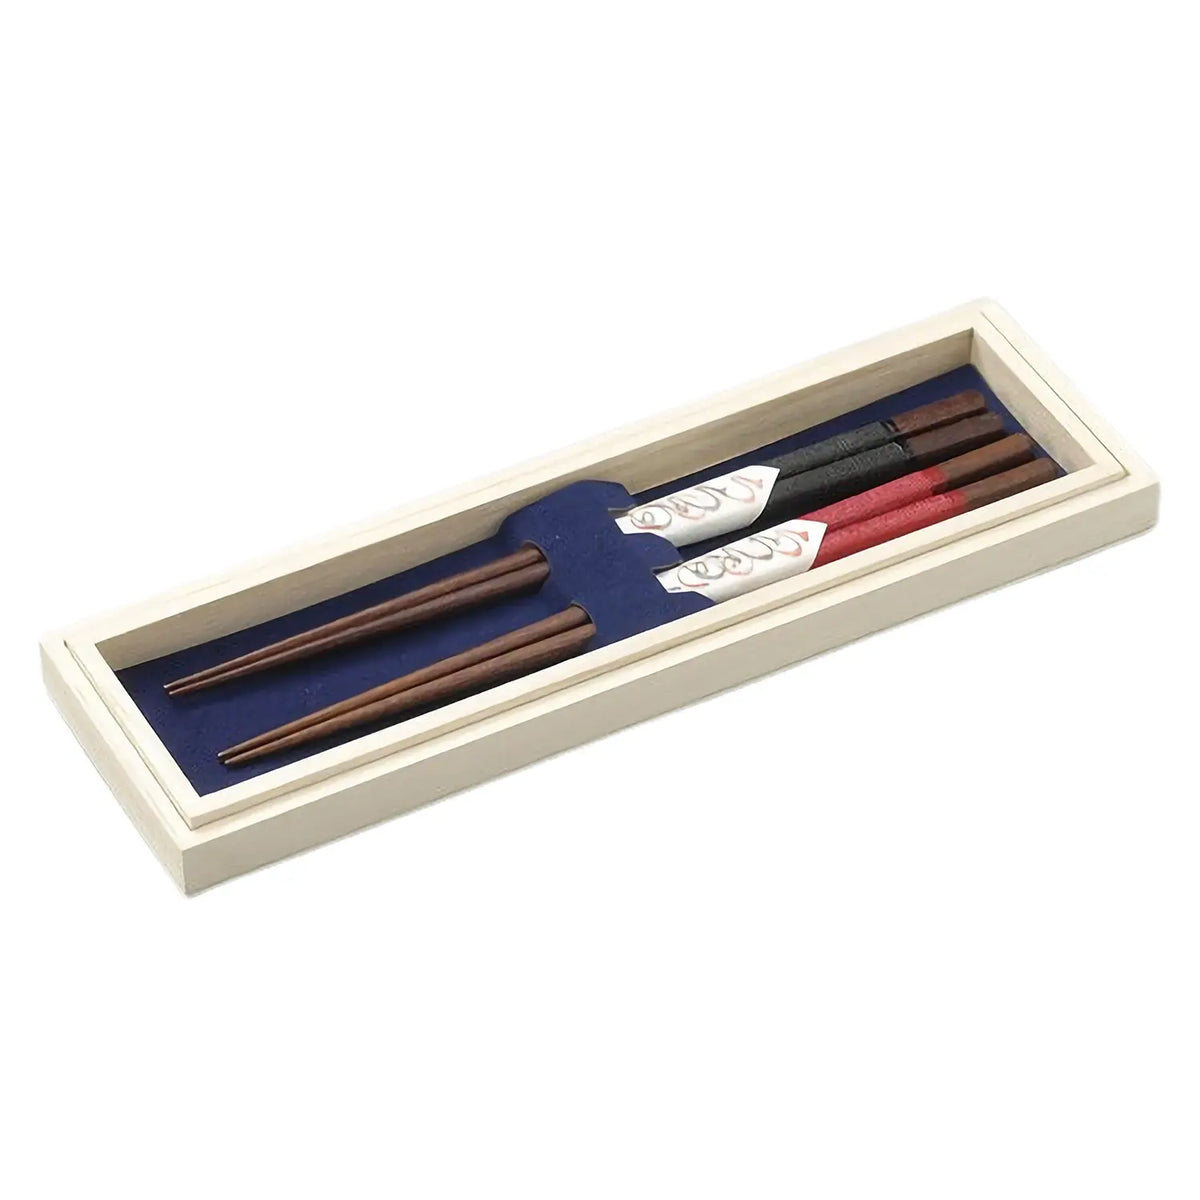 Echizen Shikki Wood Couple Chopsticks Nuno-bari